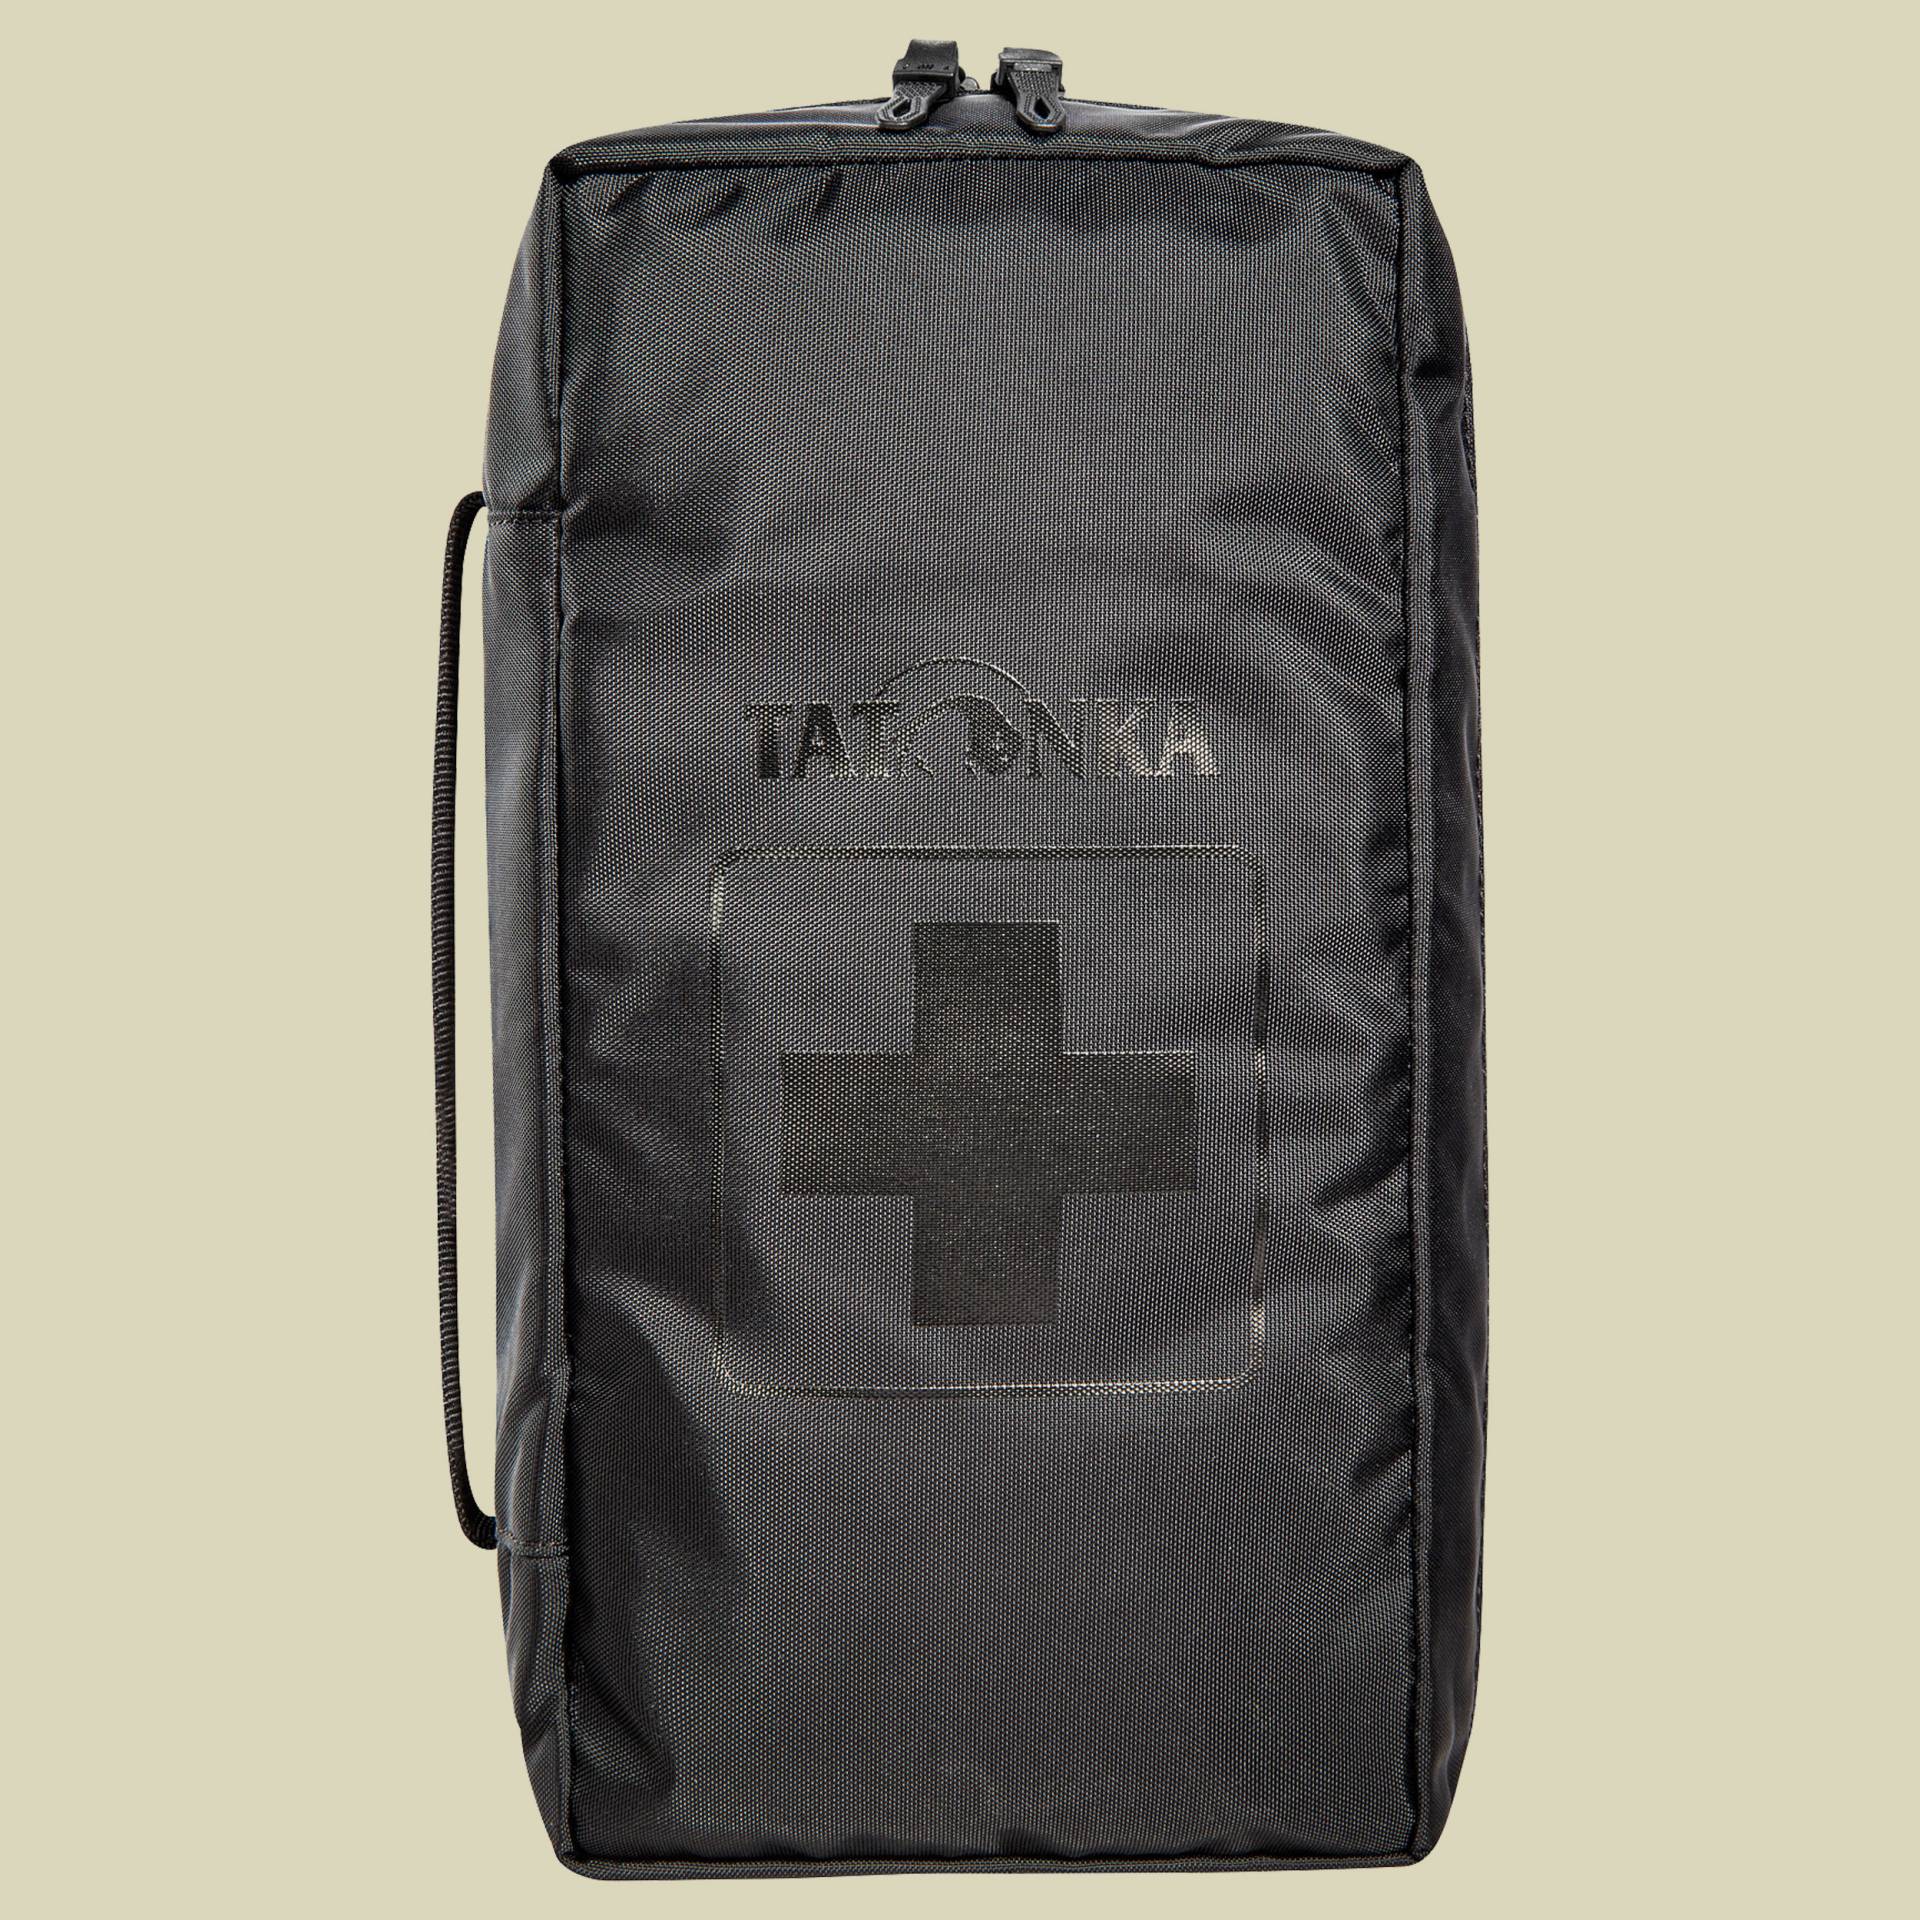 First Aid M Farbe schwarz von Tatonka